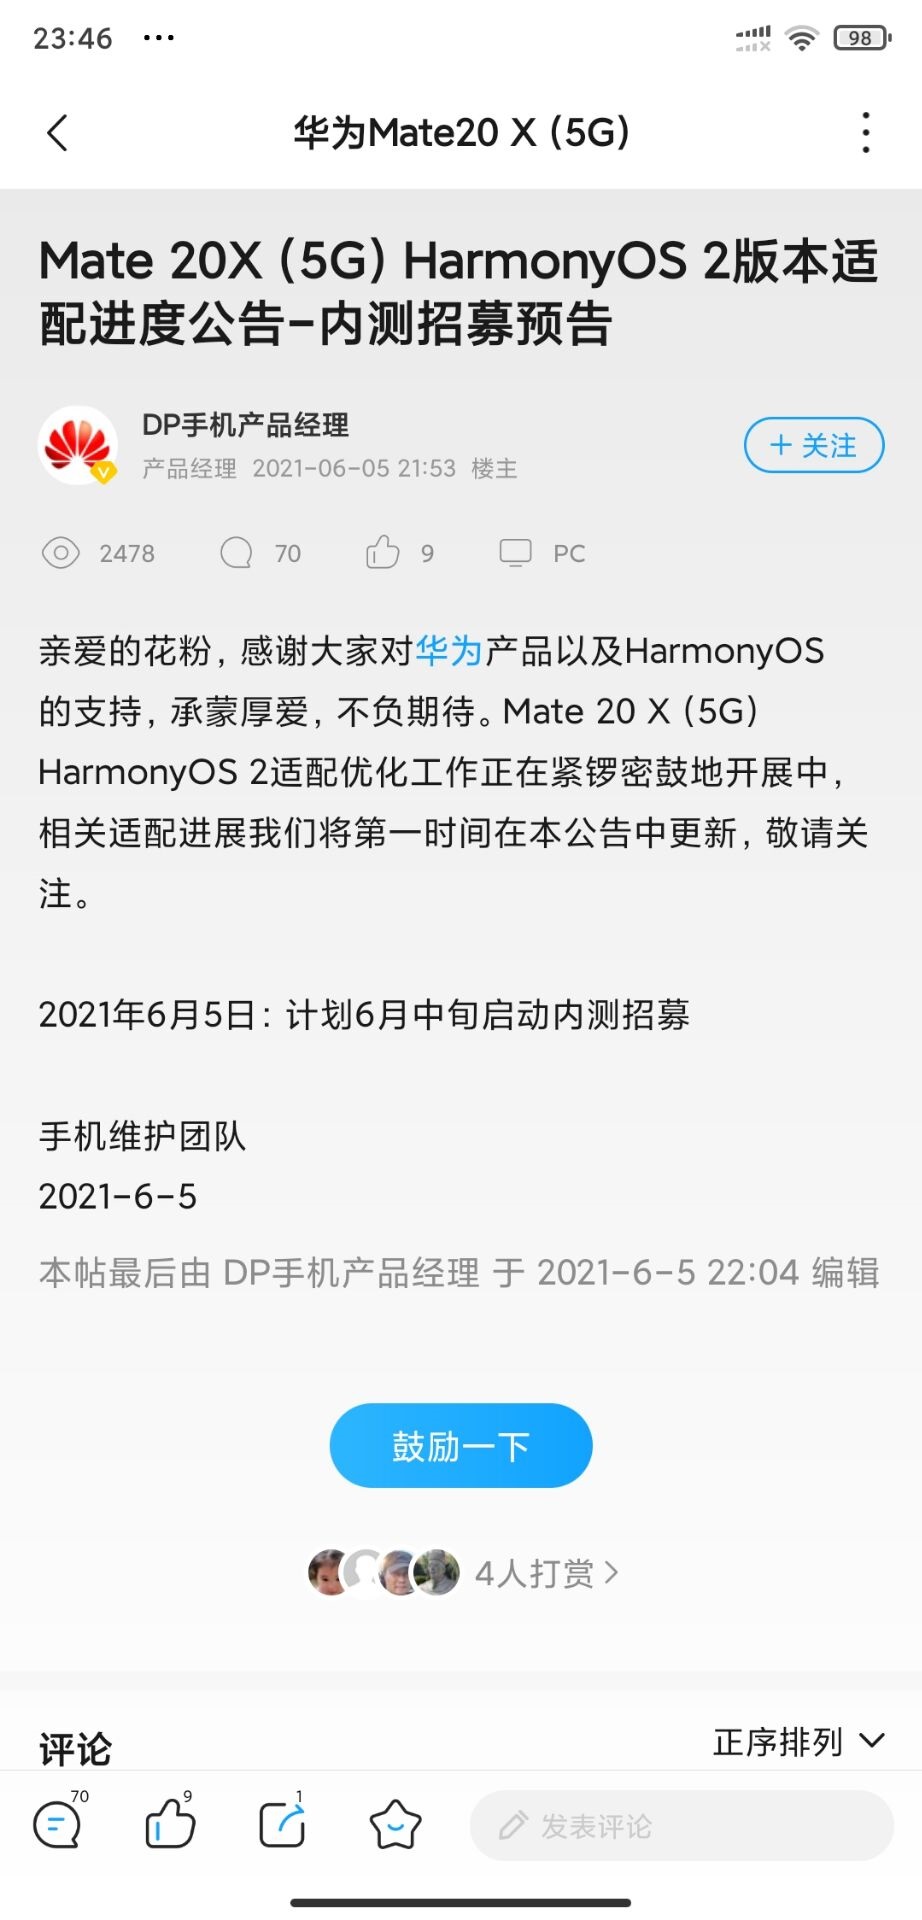 Mate 20X 5G HarmonyOS 2 Beta